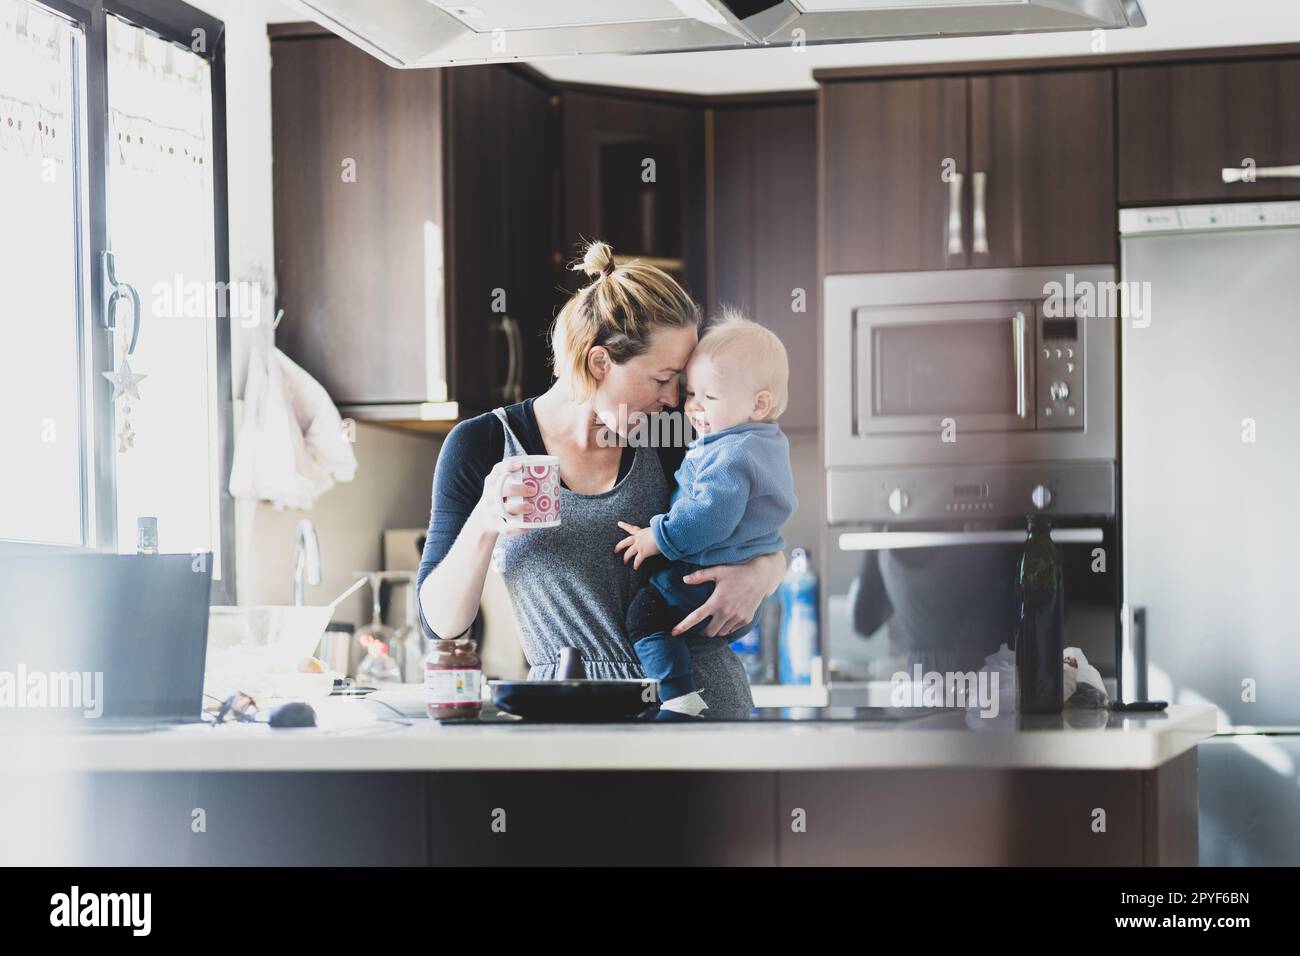 Glückliche Mutter hält ihren kleinen kleinen kleinen Jungen, während sie morgens Kaffee trinkt und Pfannkuchen zum Frühstück in der Hausküche macht. Familienleben, häusliches Lebenskonzept. Stockfoto